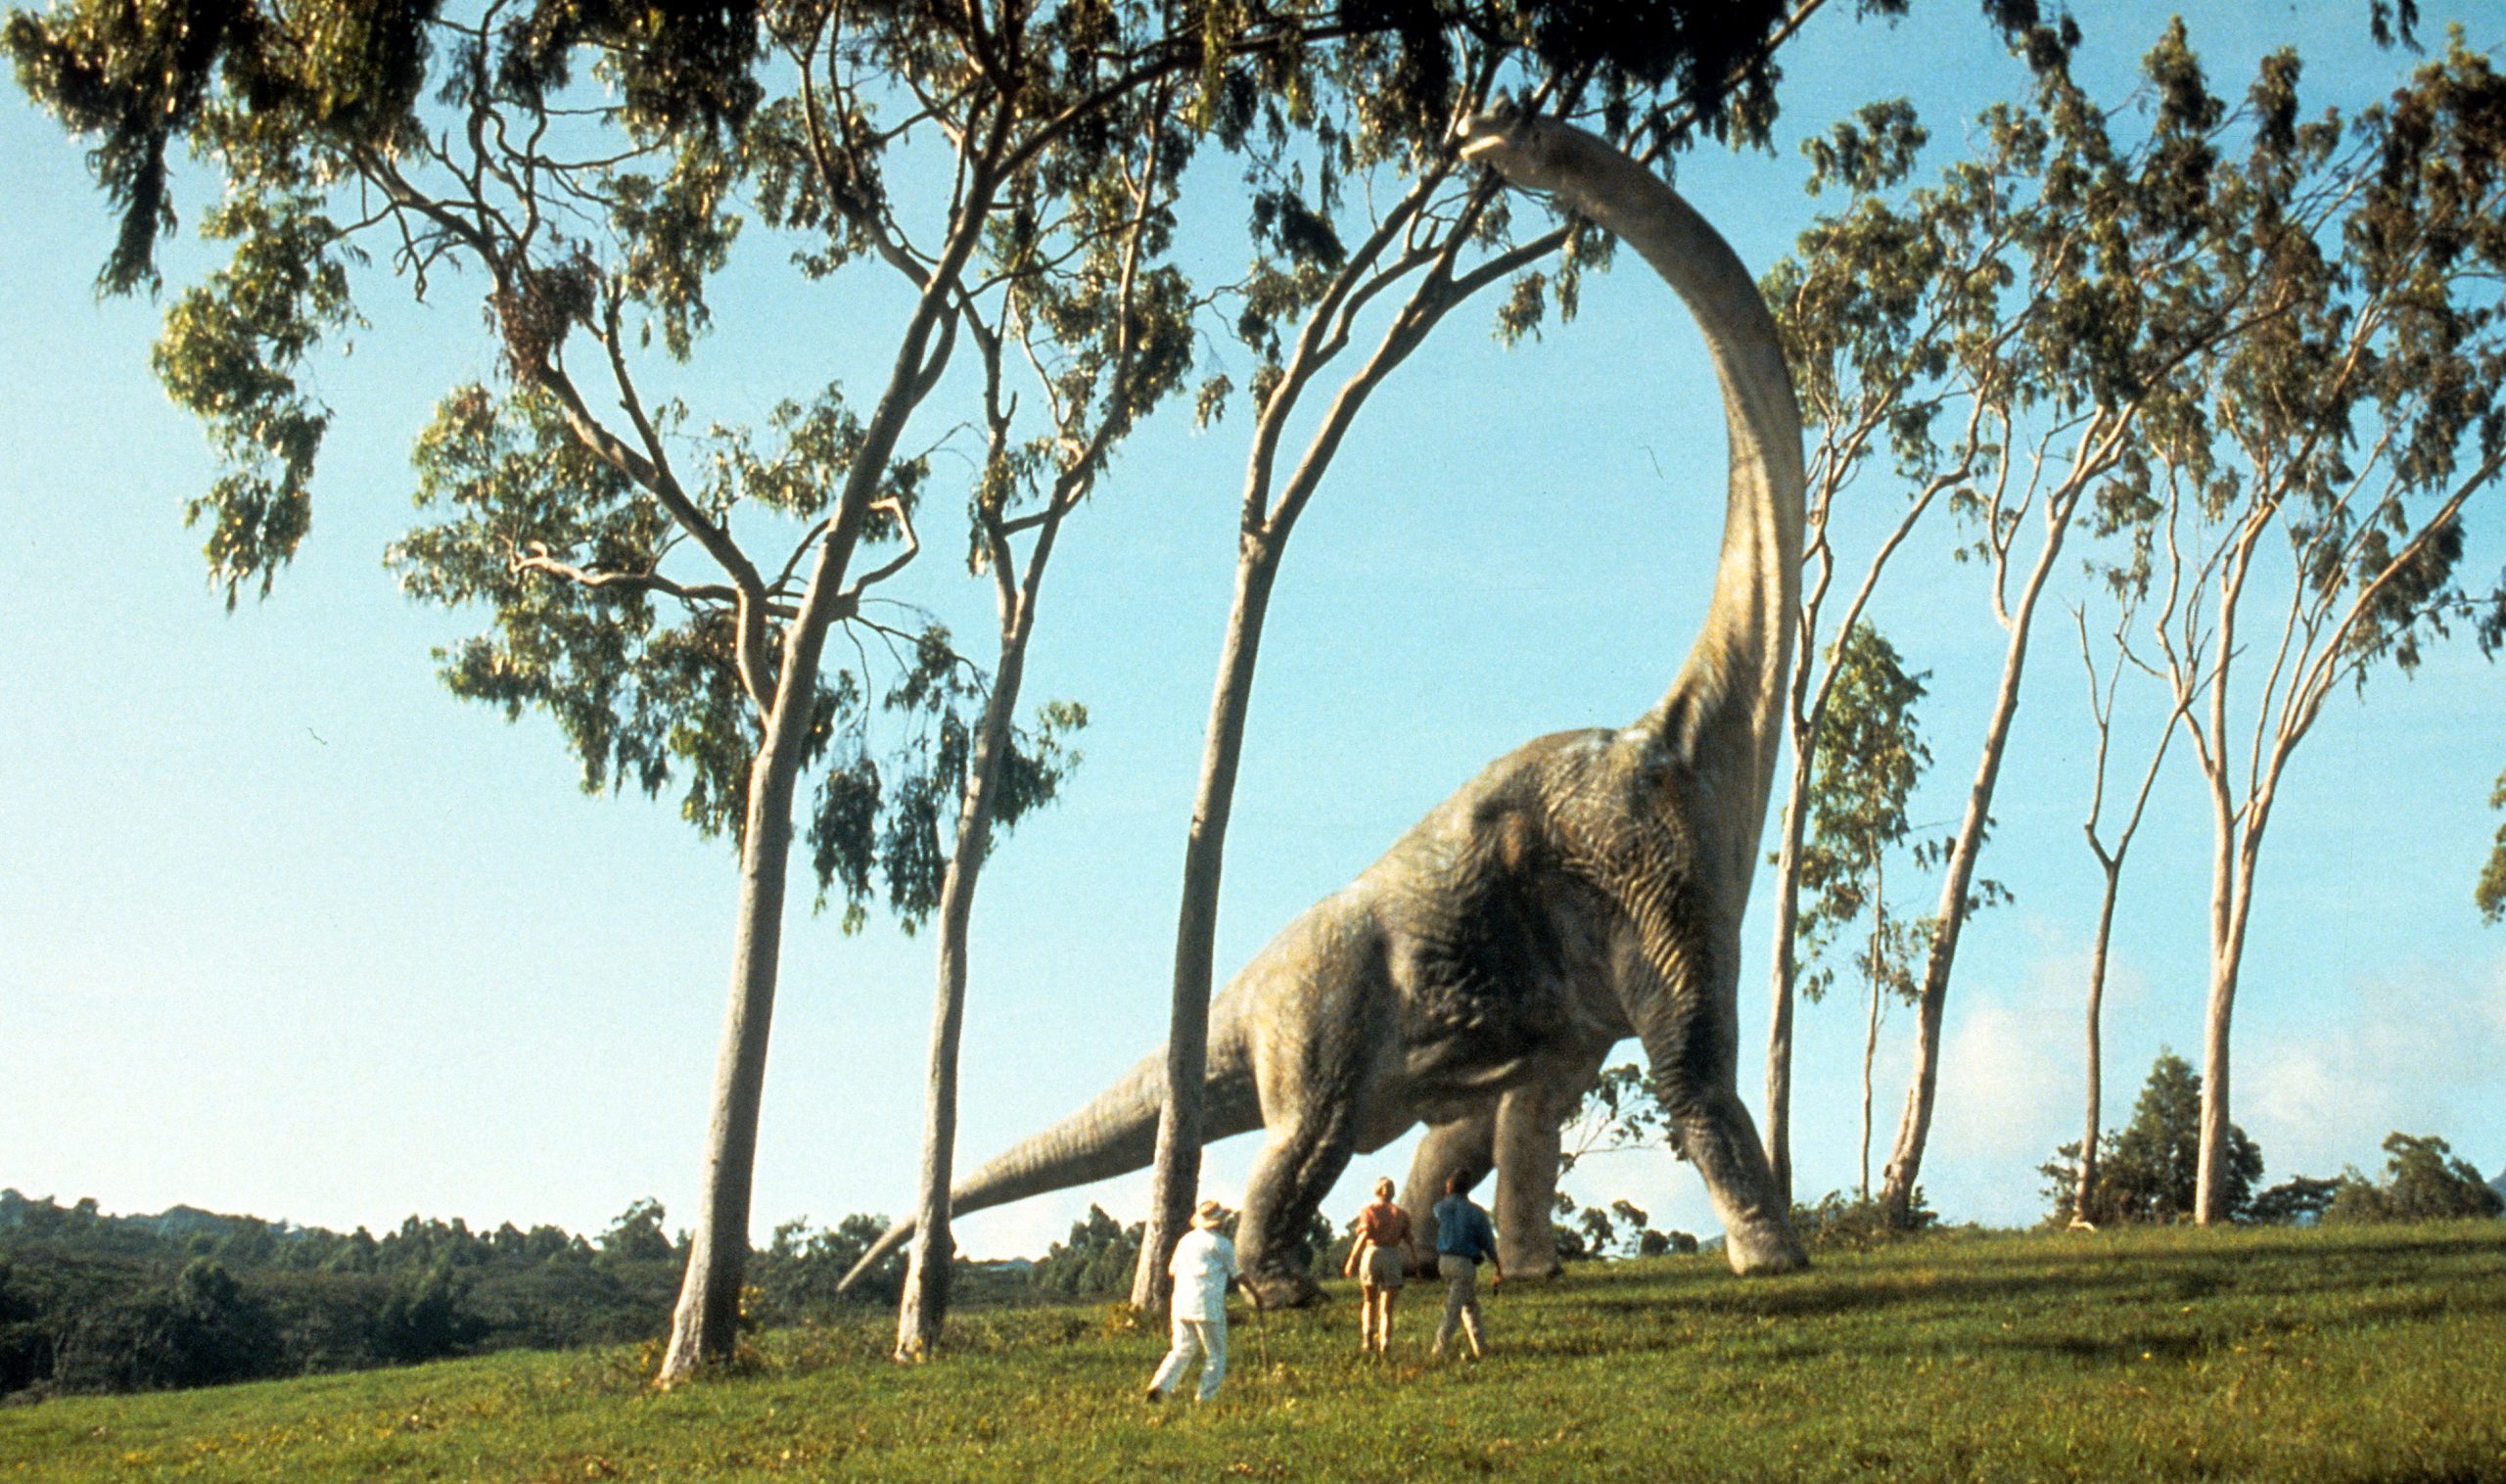 Jurassic Park ci ricorda che l'uomo non è infallibile di fronte alla natura